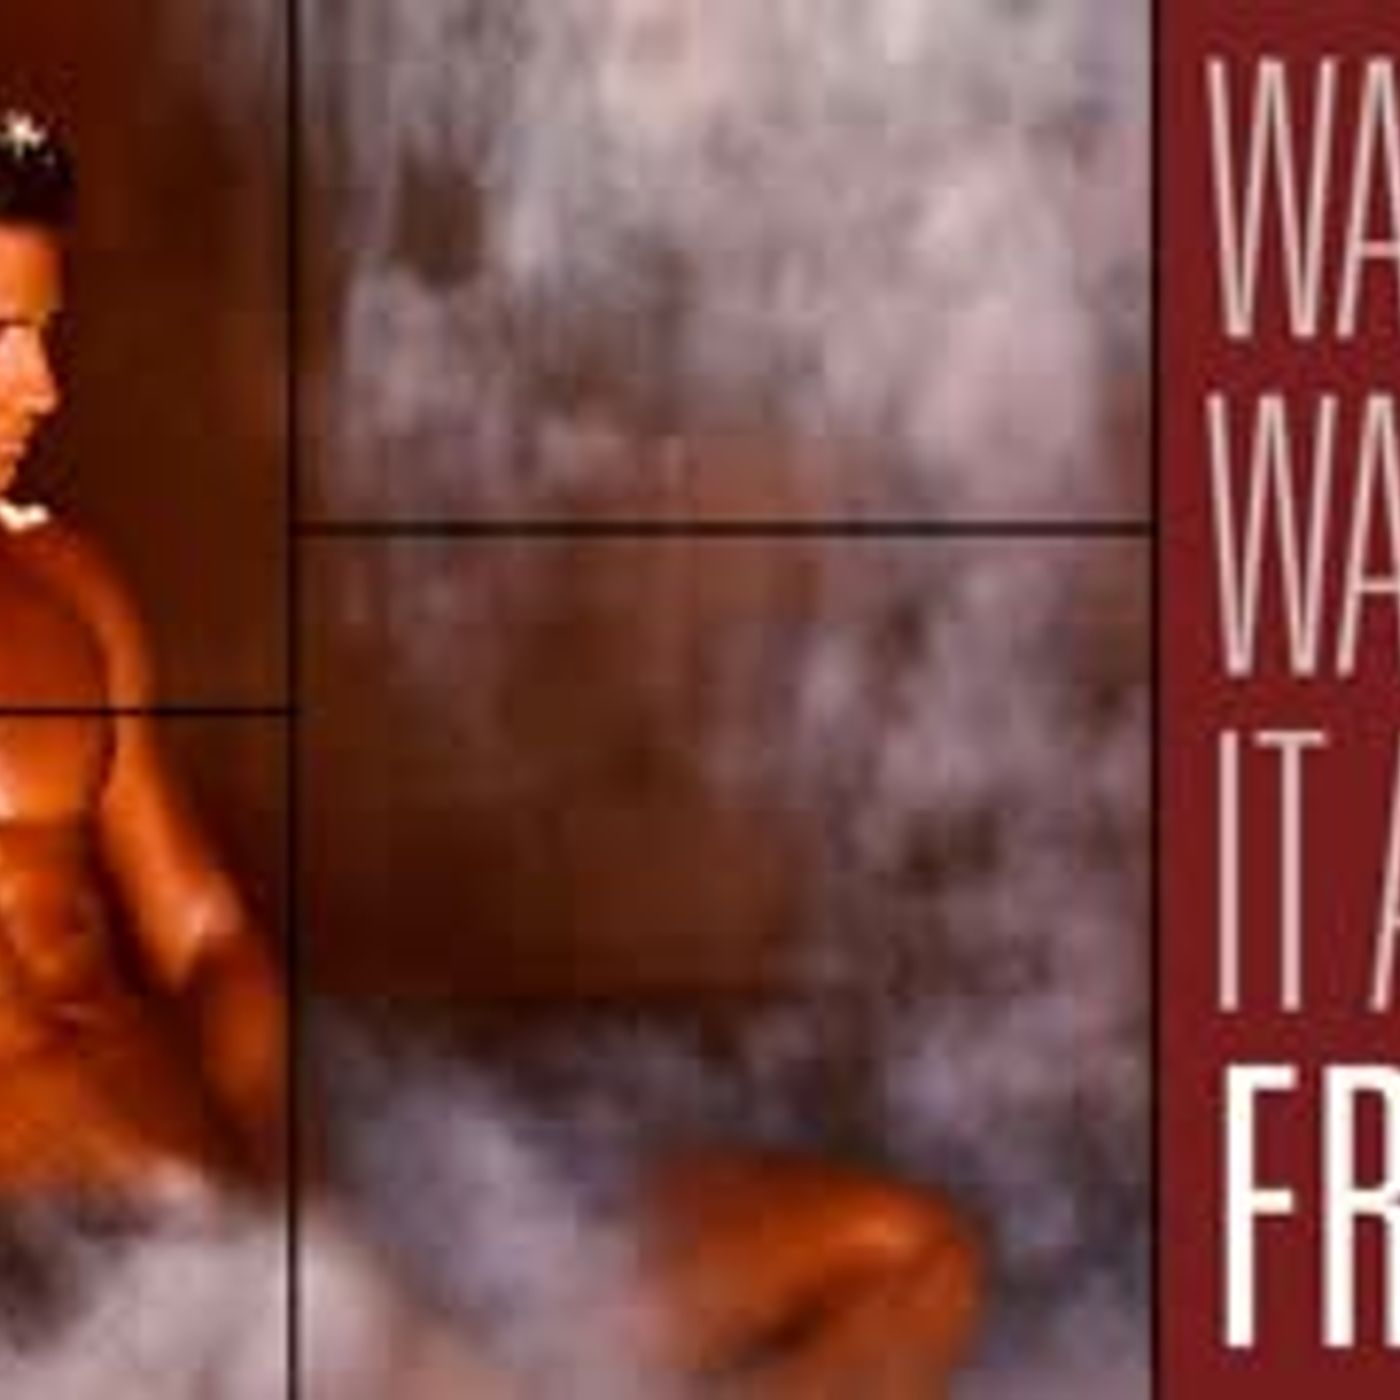 Wammen Demands Access to All Male Nude Resort, Wammen Most Affected | Maintaining Frame 52